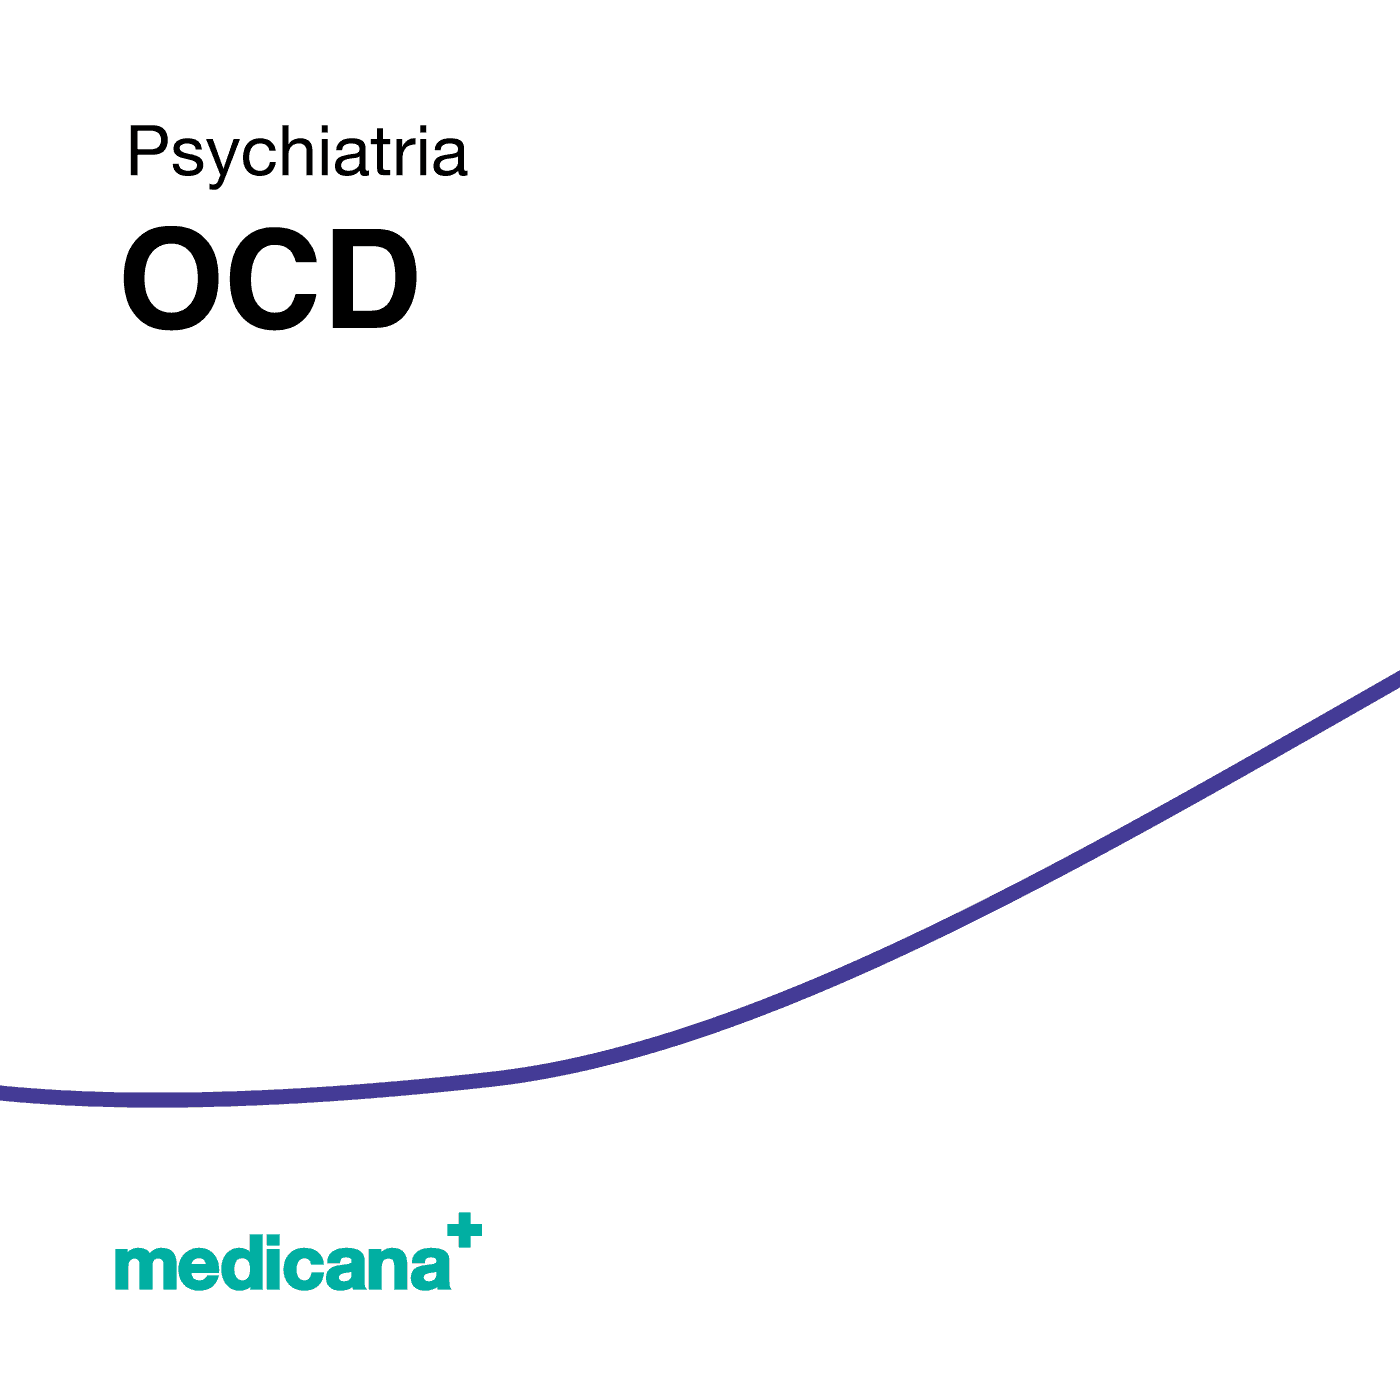 Grafika, białe tło z granatową kreską, czarnym napisem Psychiatria - OCD i logo Medicana Centrum Terapii Medyczna Marihuana w lewym dolnym rogu.